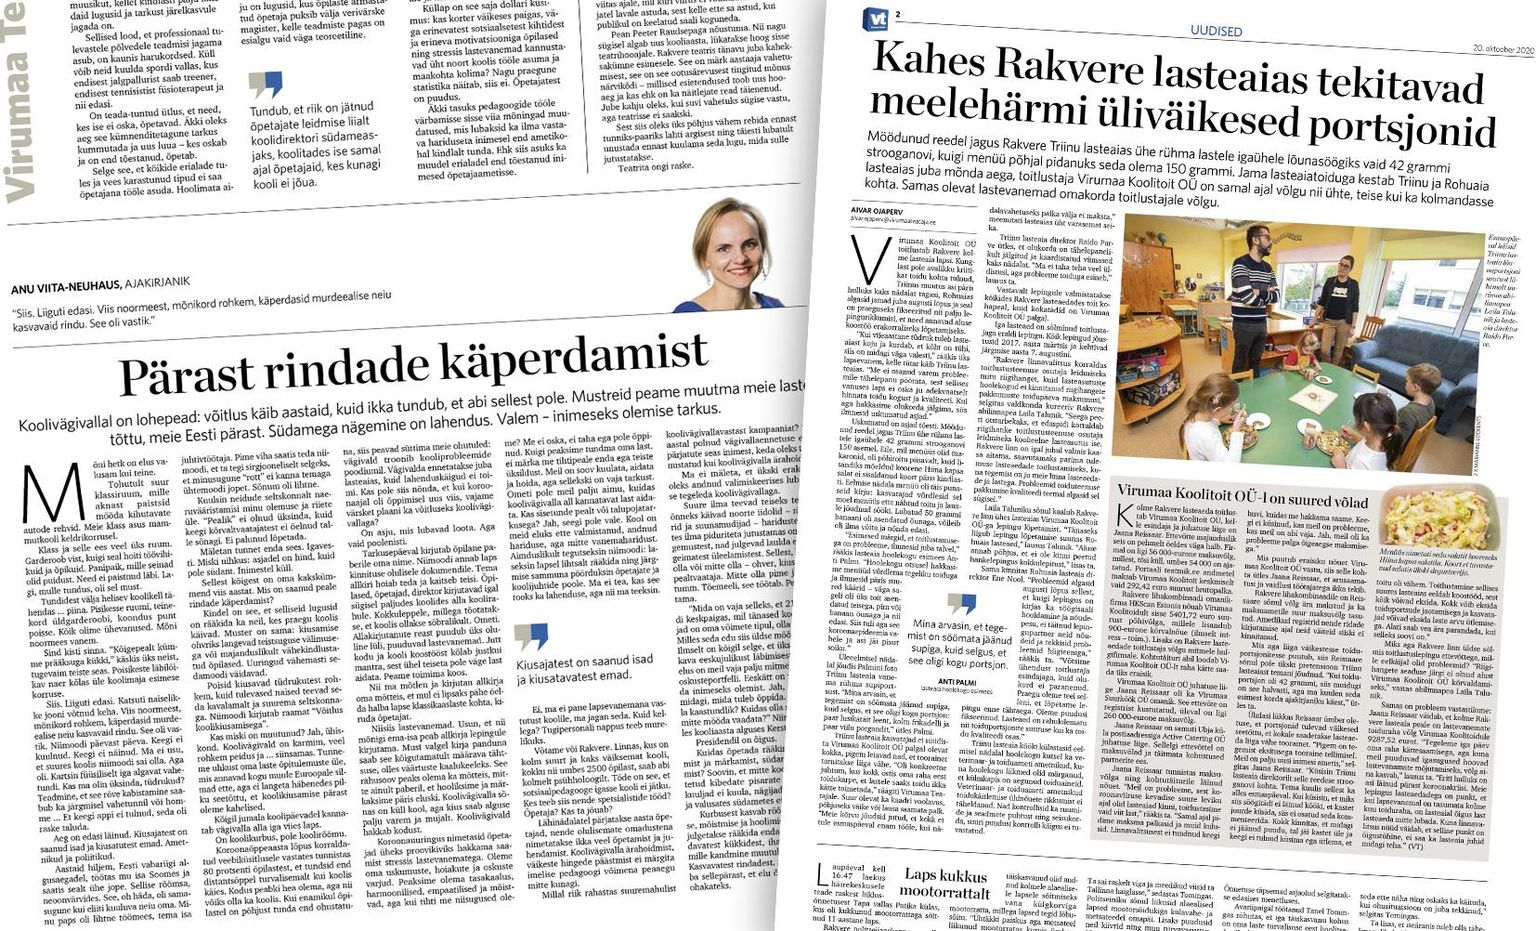 Eelmise aasta maakonnalehtede parima uudise tiitlit püüab Aivar Ojaperve uudisesari Virumaa Koolitoidu saagast. Arvamuslugude nominentide seas on Anu Viita-Neuhausi kirjutis koolivägivallast.